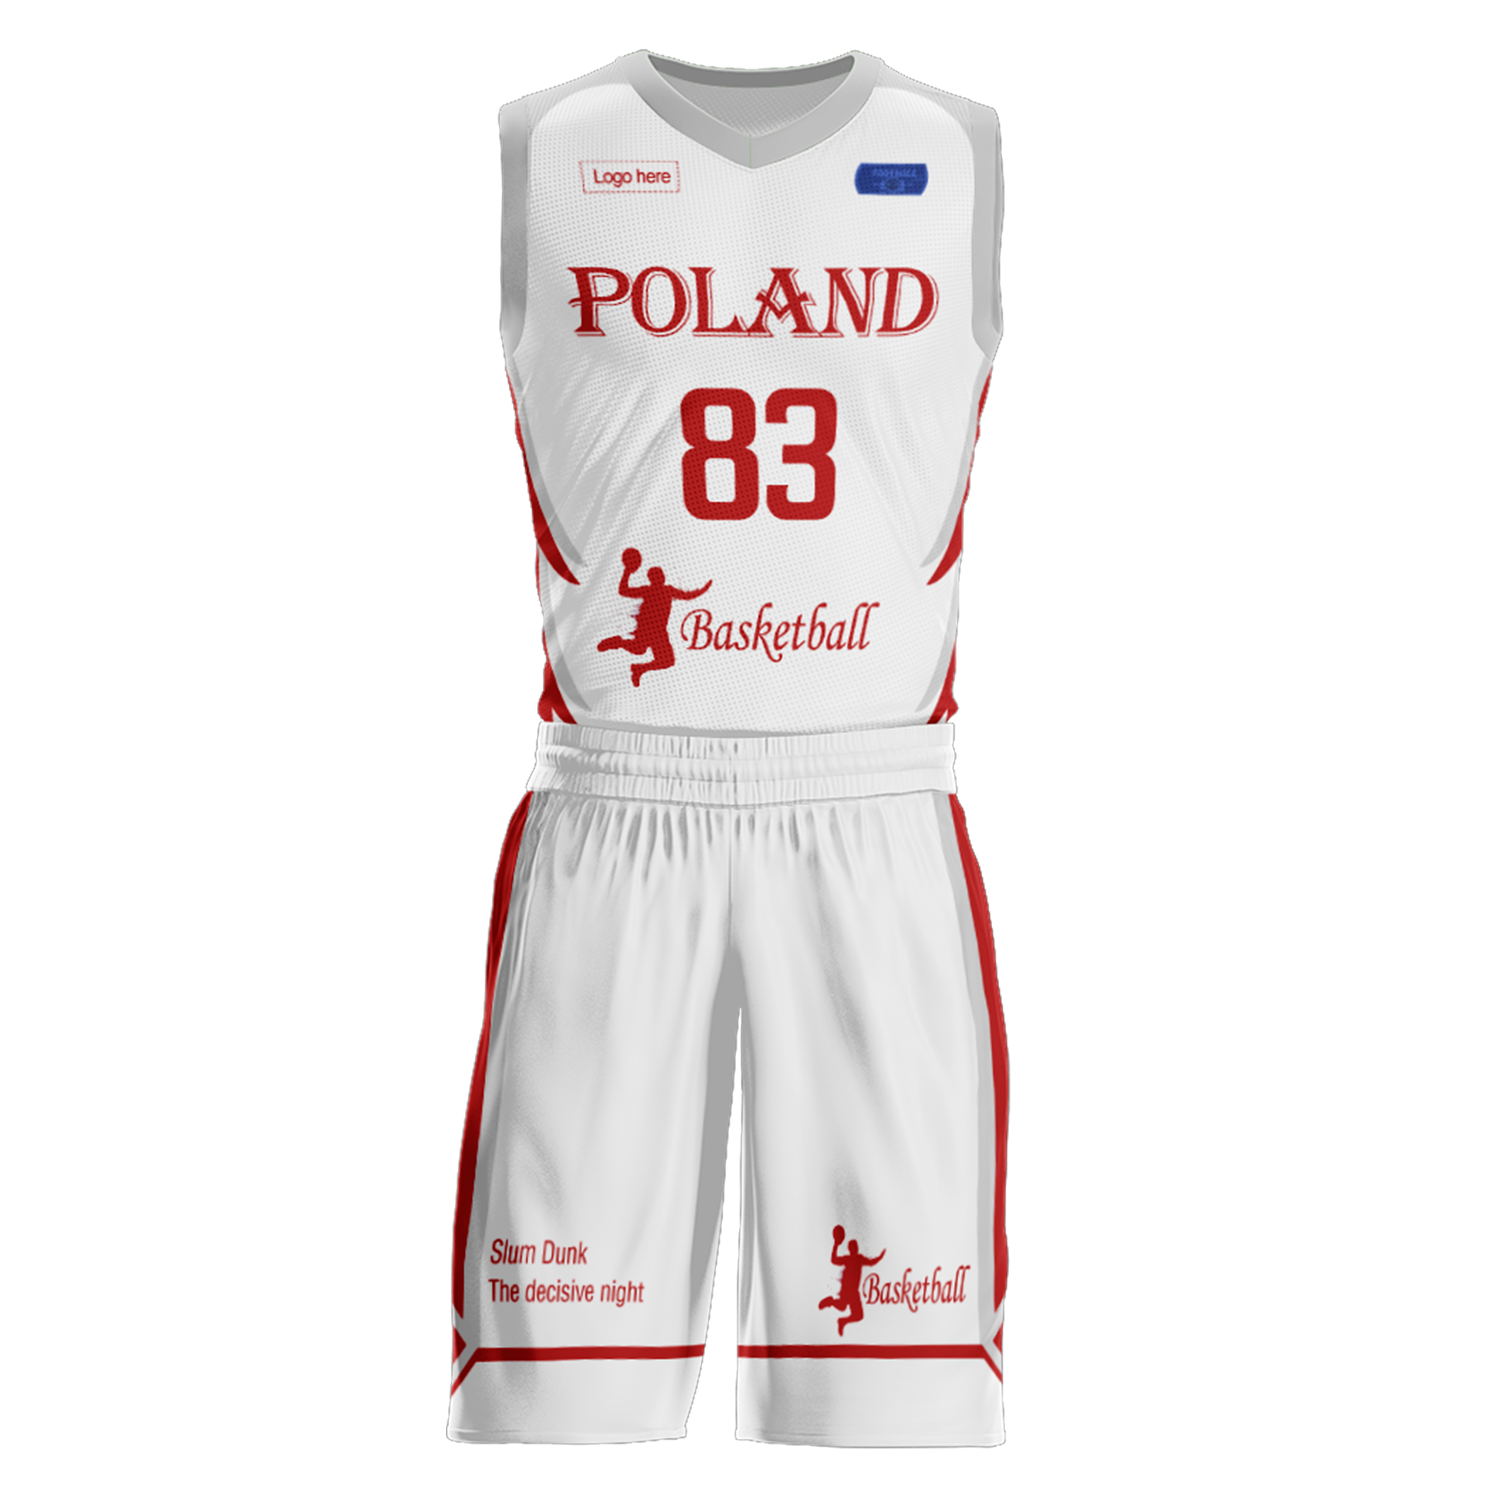 Trajes de baloncesto del equipo de Polonia personalizados